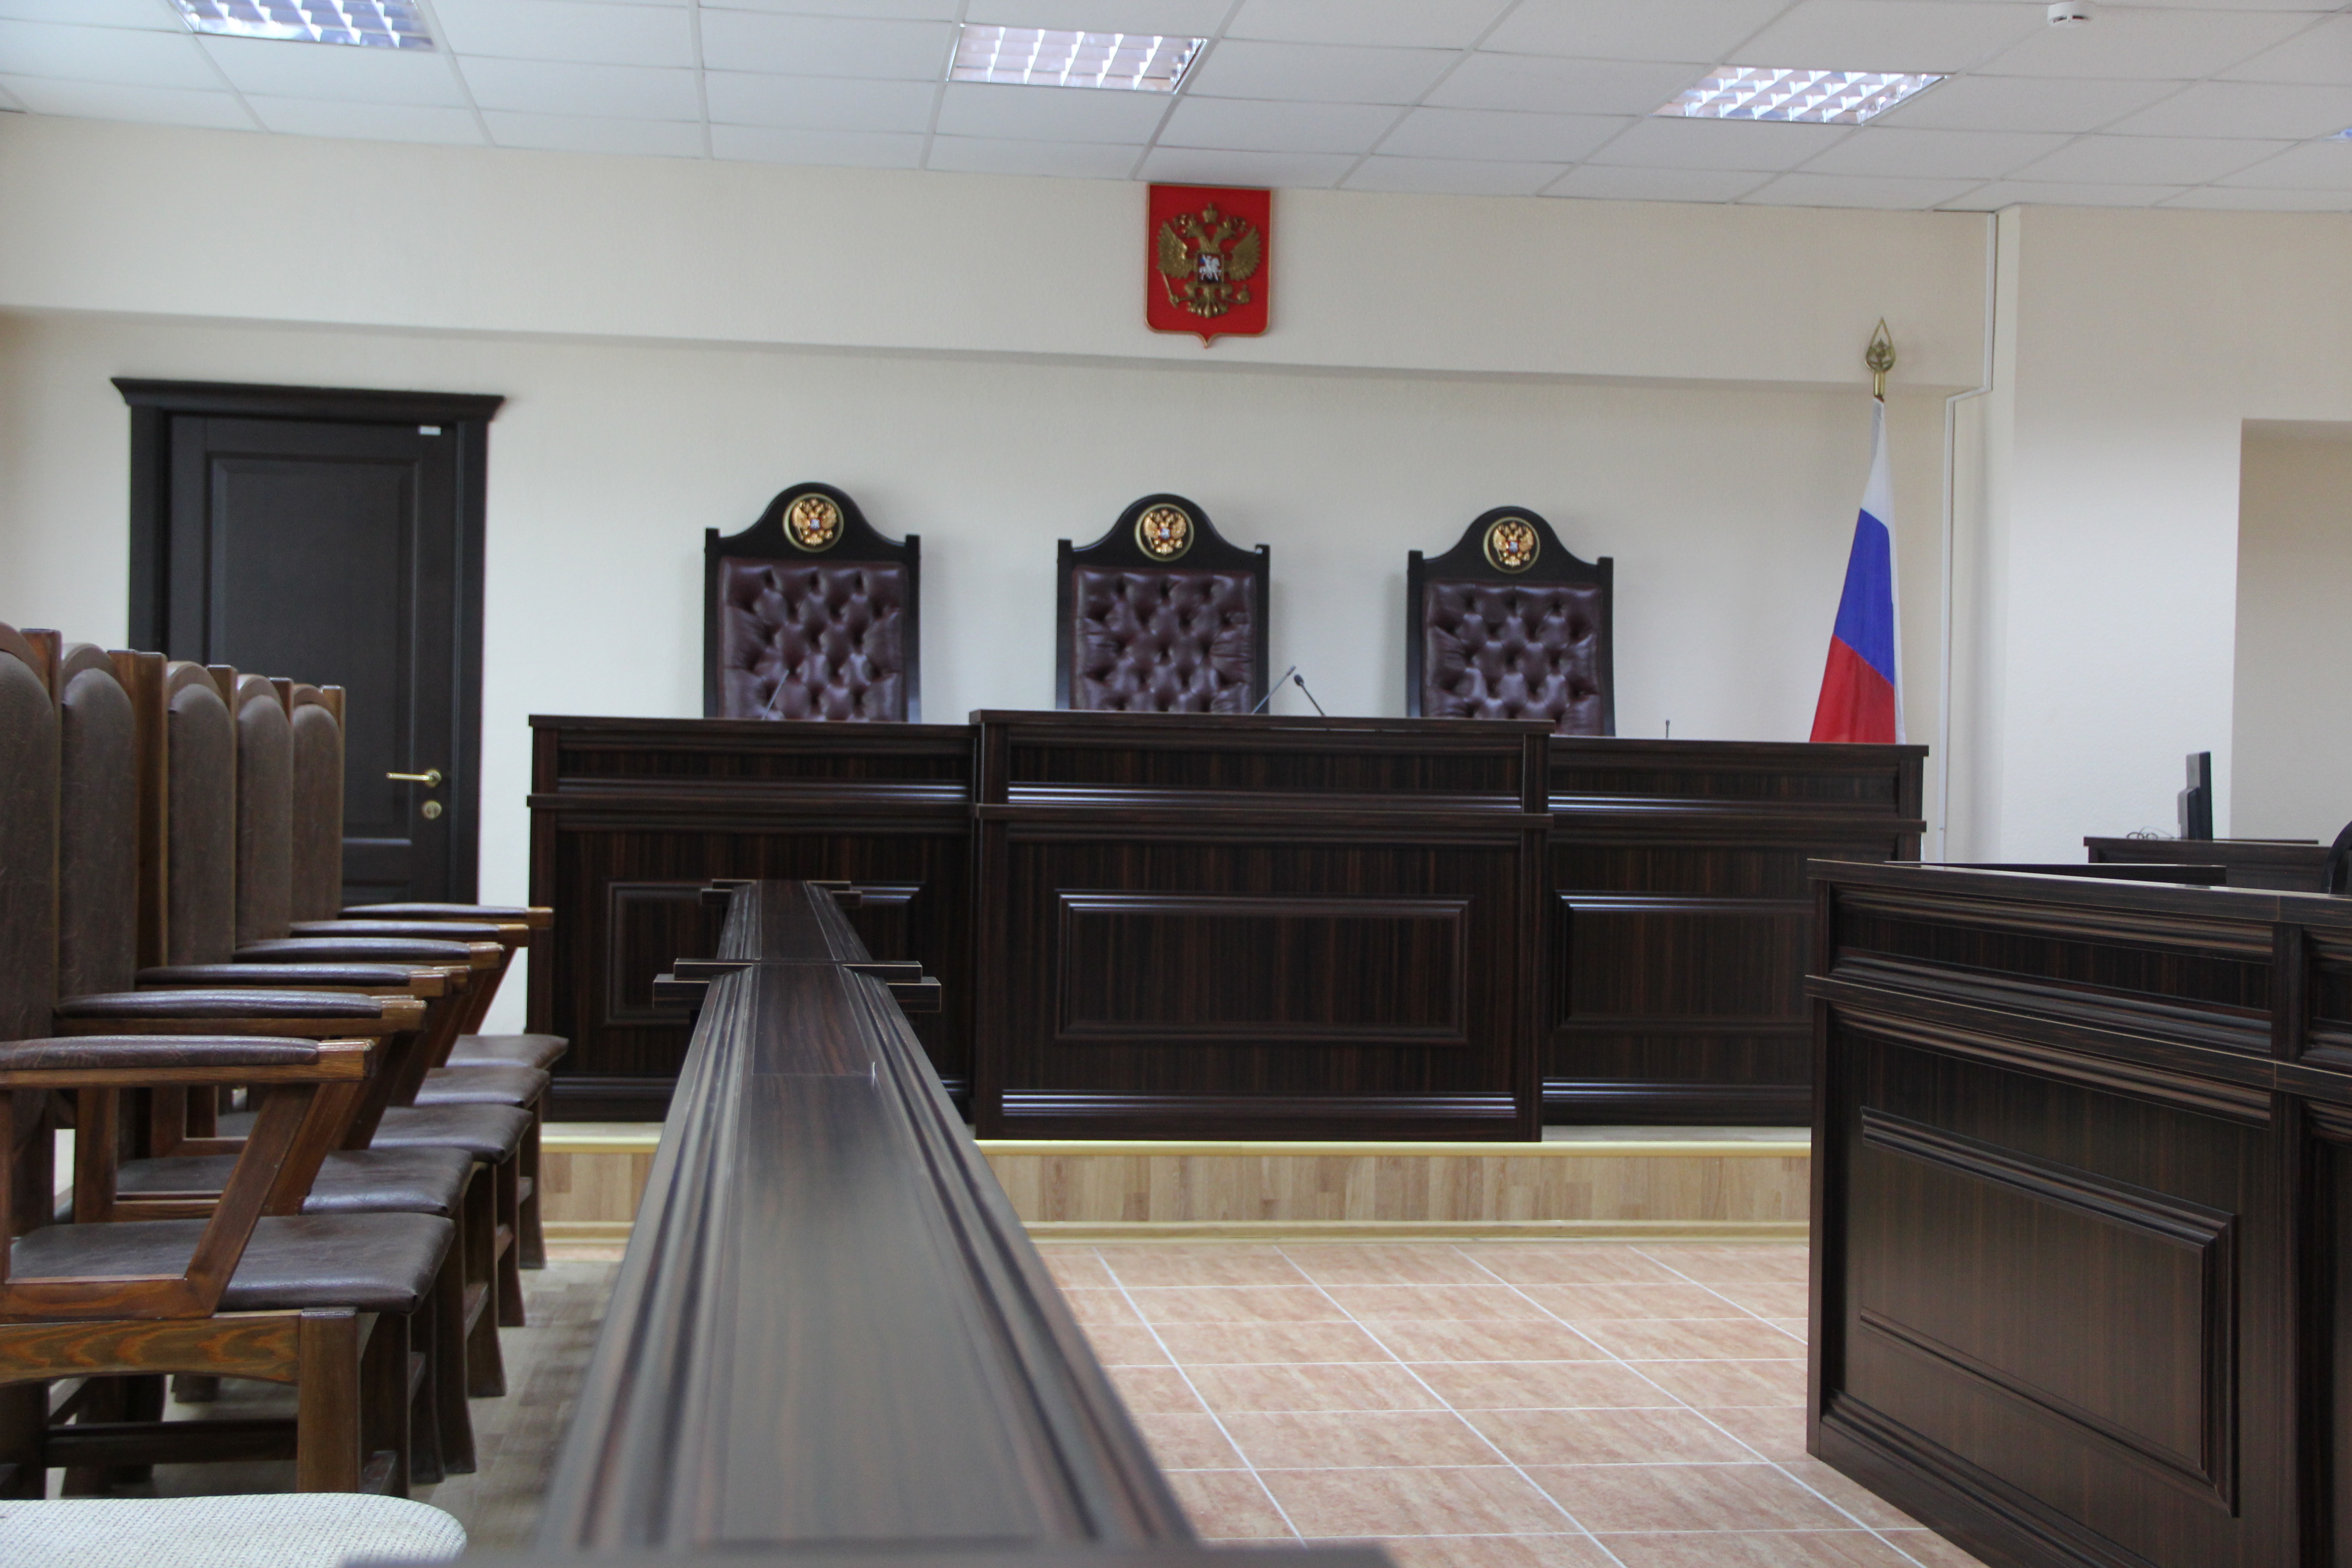 Сайт ростовского военного суда